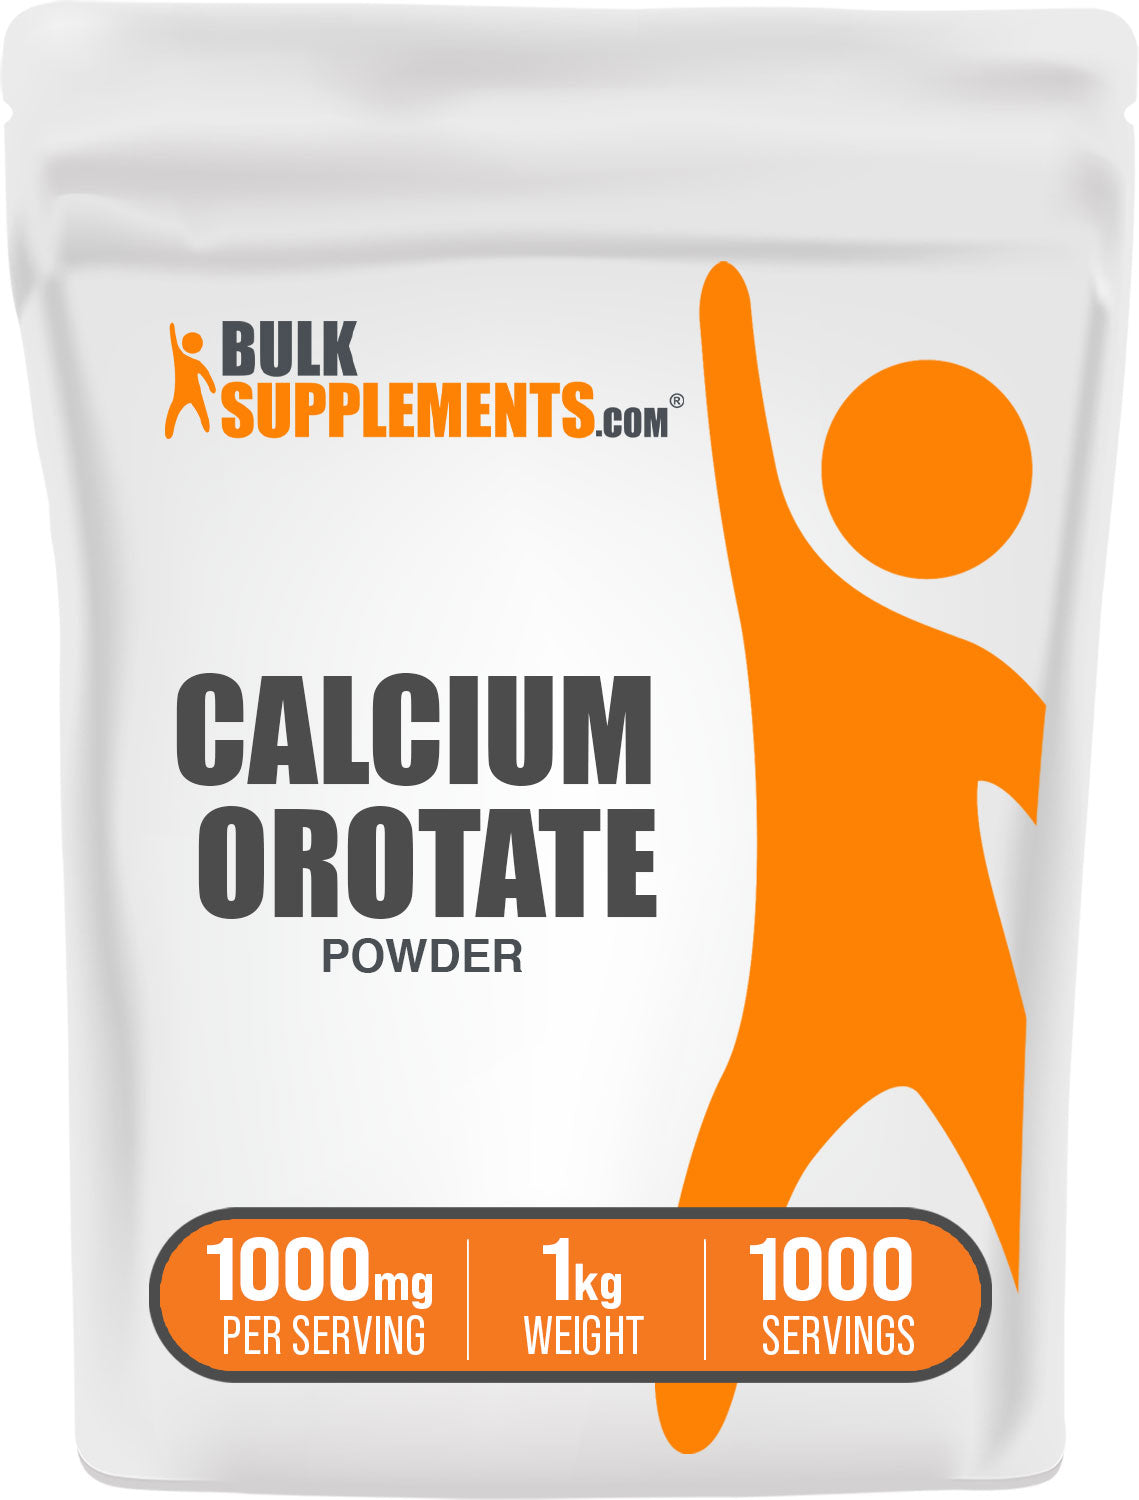 1kg calcium orotate